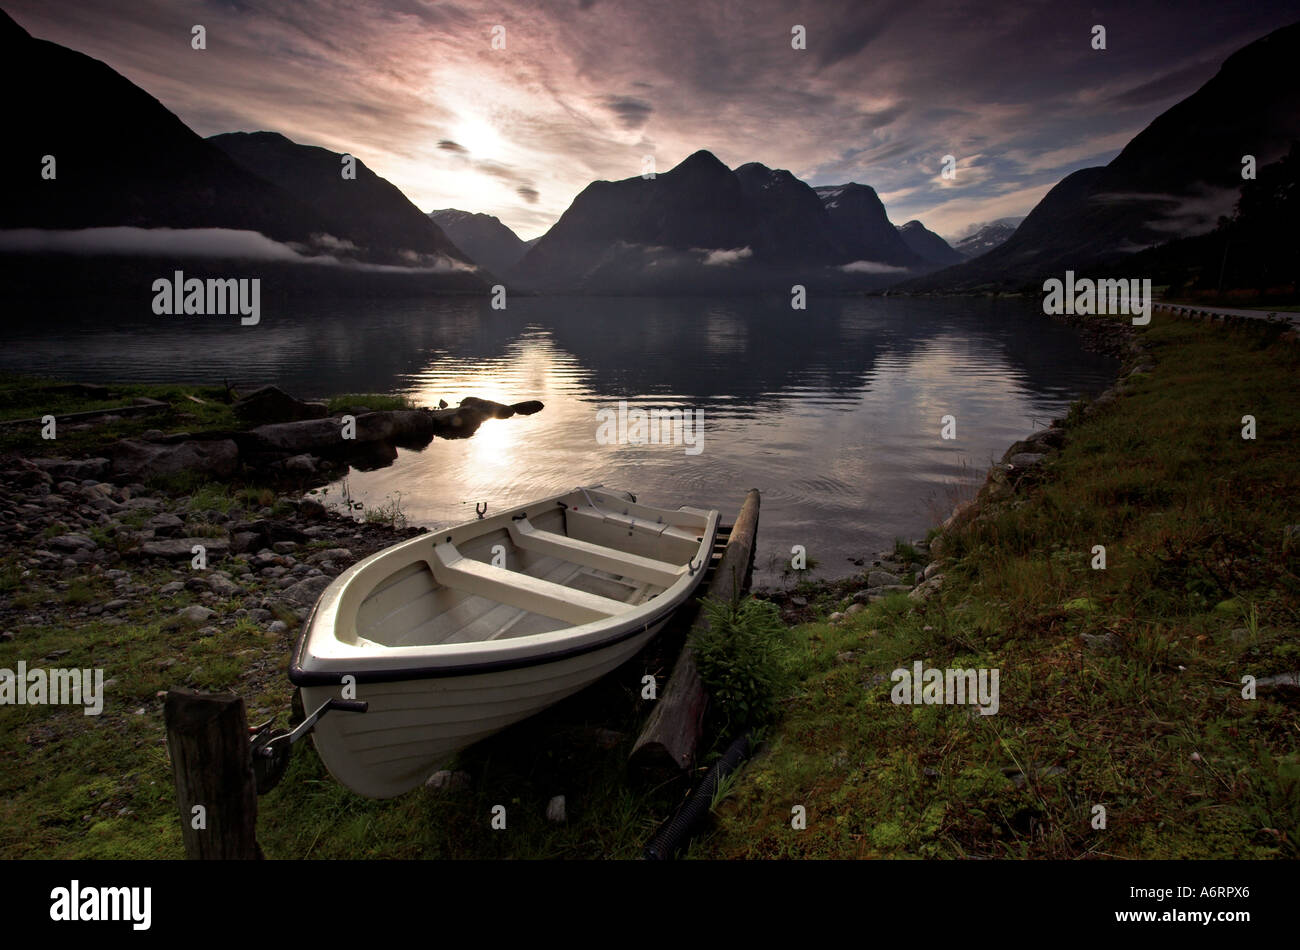 Ein kleines Boot am Ufer von einem norwegischen Fjord angebunden.  Niedrige Strähnen Wolke hängen über den stillen Wassern Stockfoto